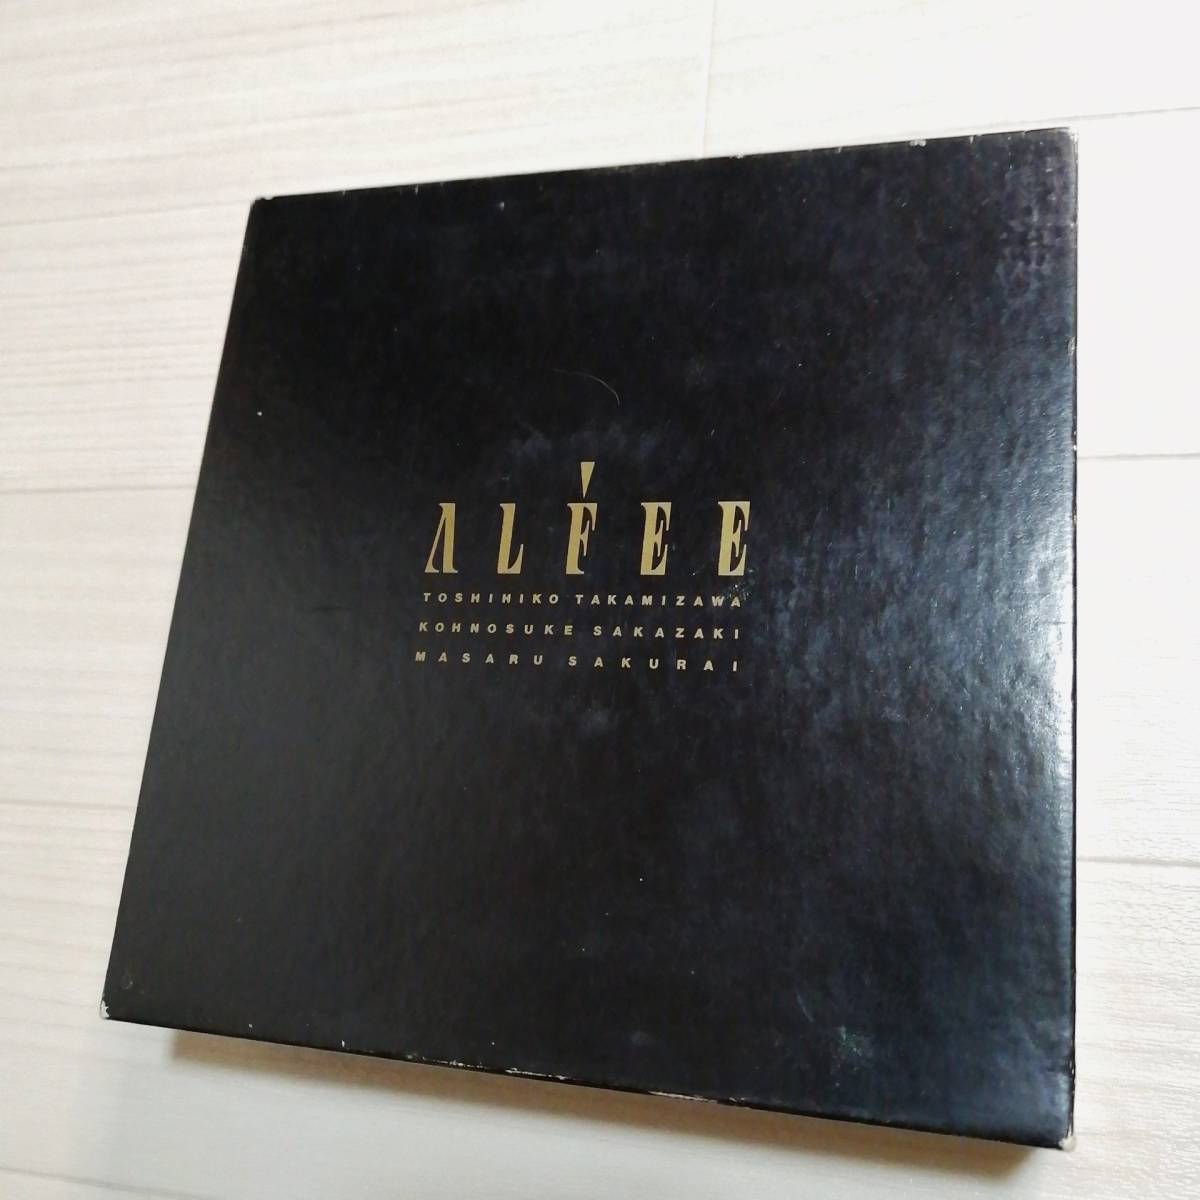 ALFEE e⑫ SINGLES BOX レコード 17枚 メリーアン・星空のデイスタンス 他 美品 グッズ アルフィー 高見沢俊彦_画像1